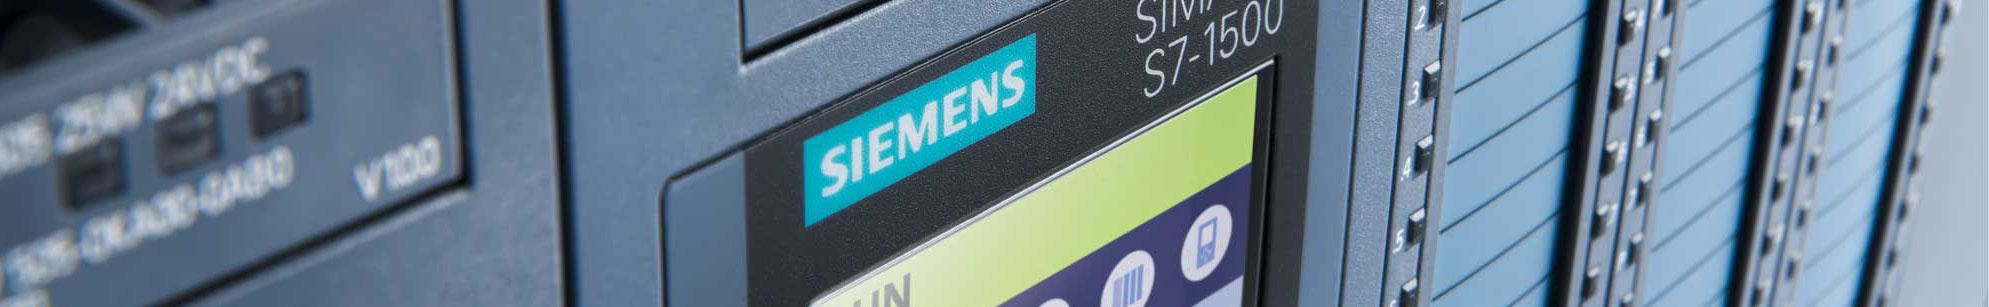 Siemens Low Voltage